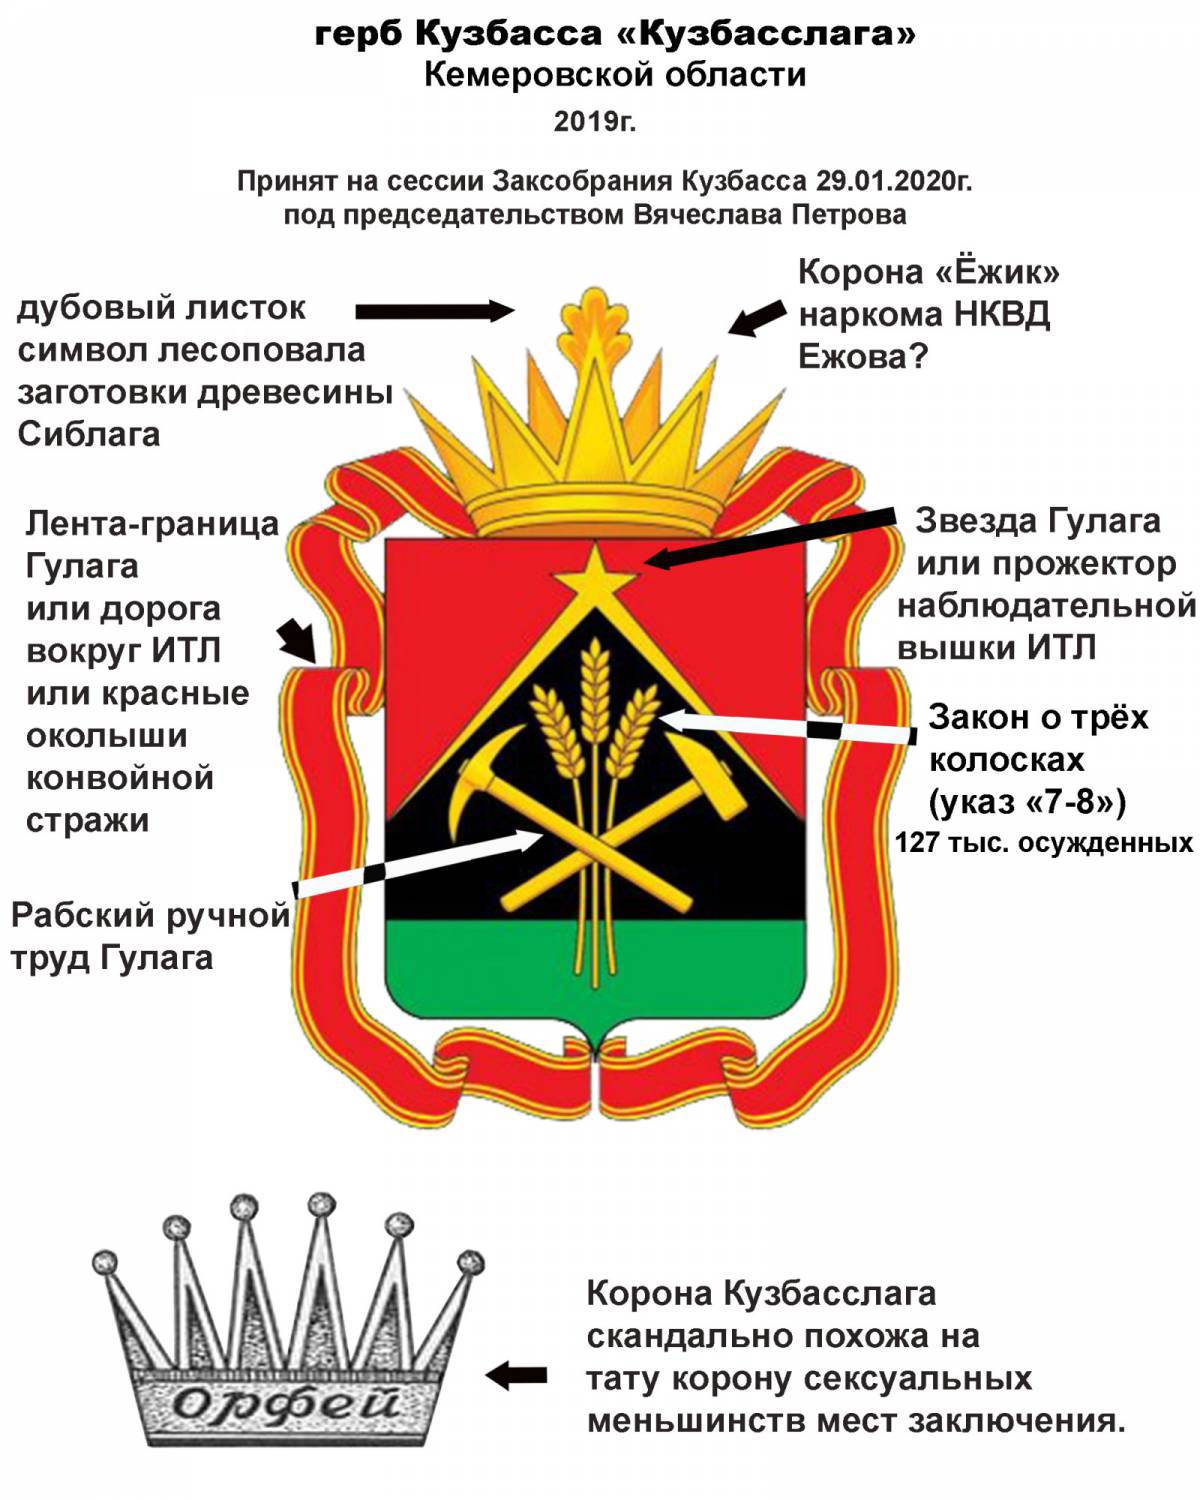 Герб кемеровской области #33